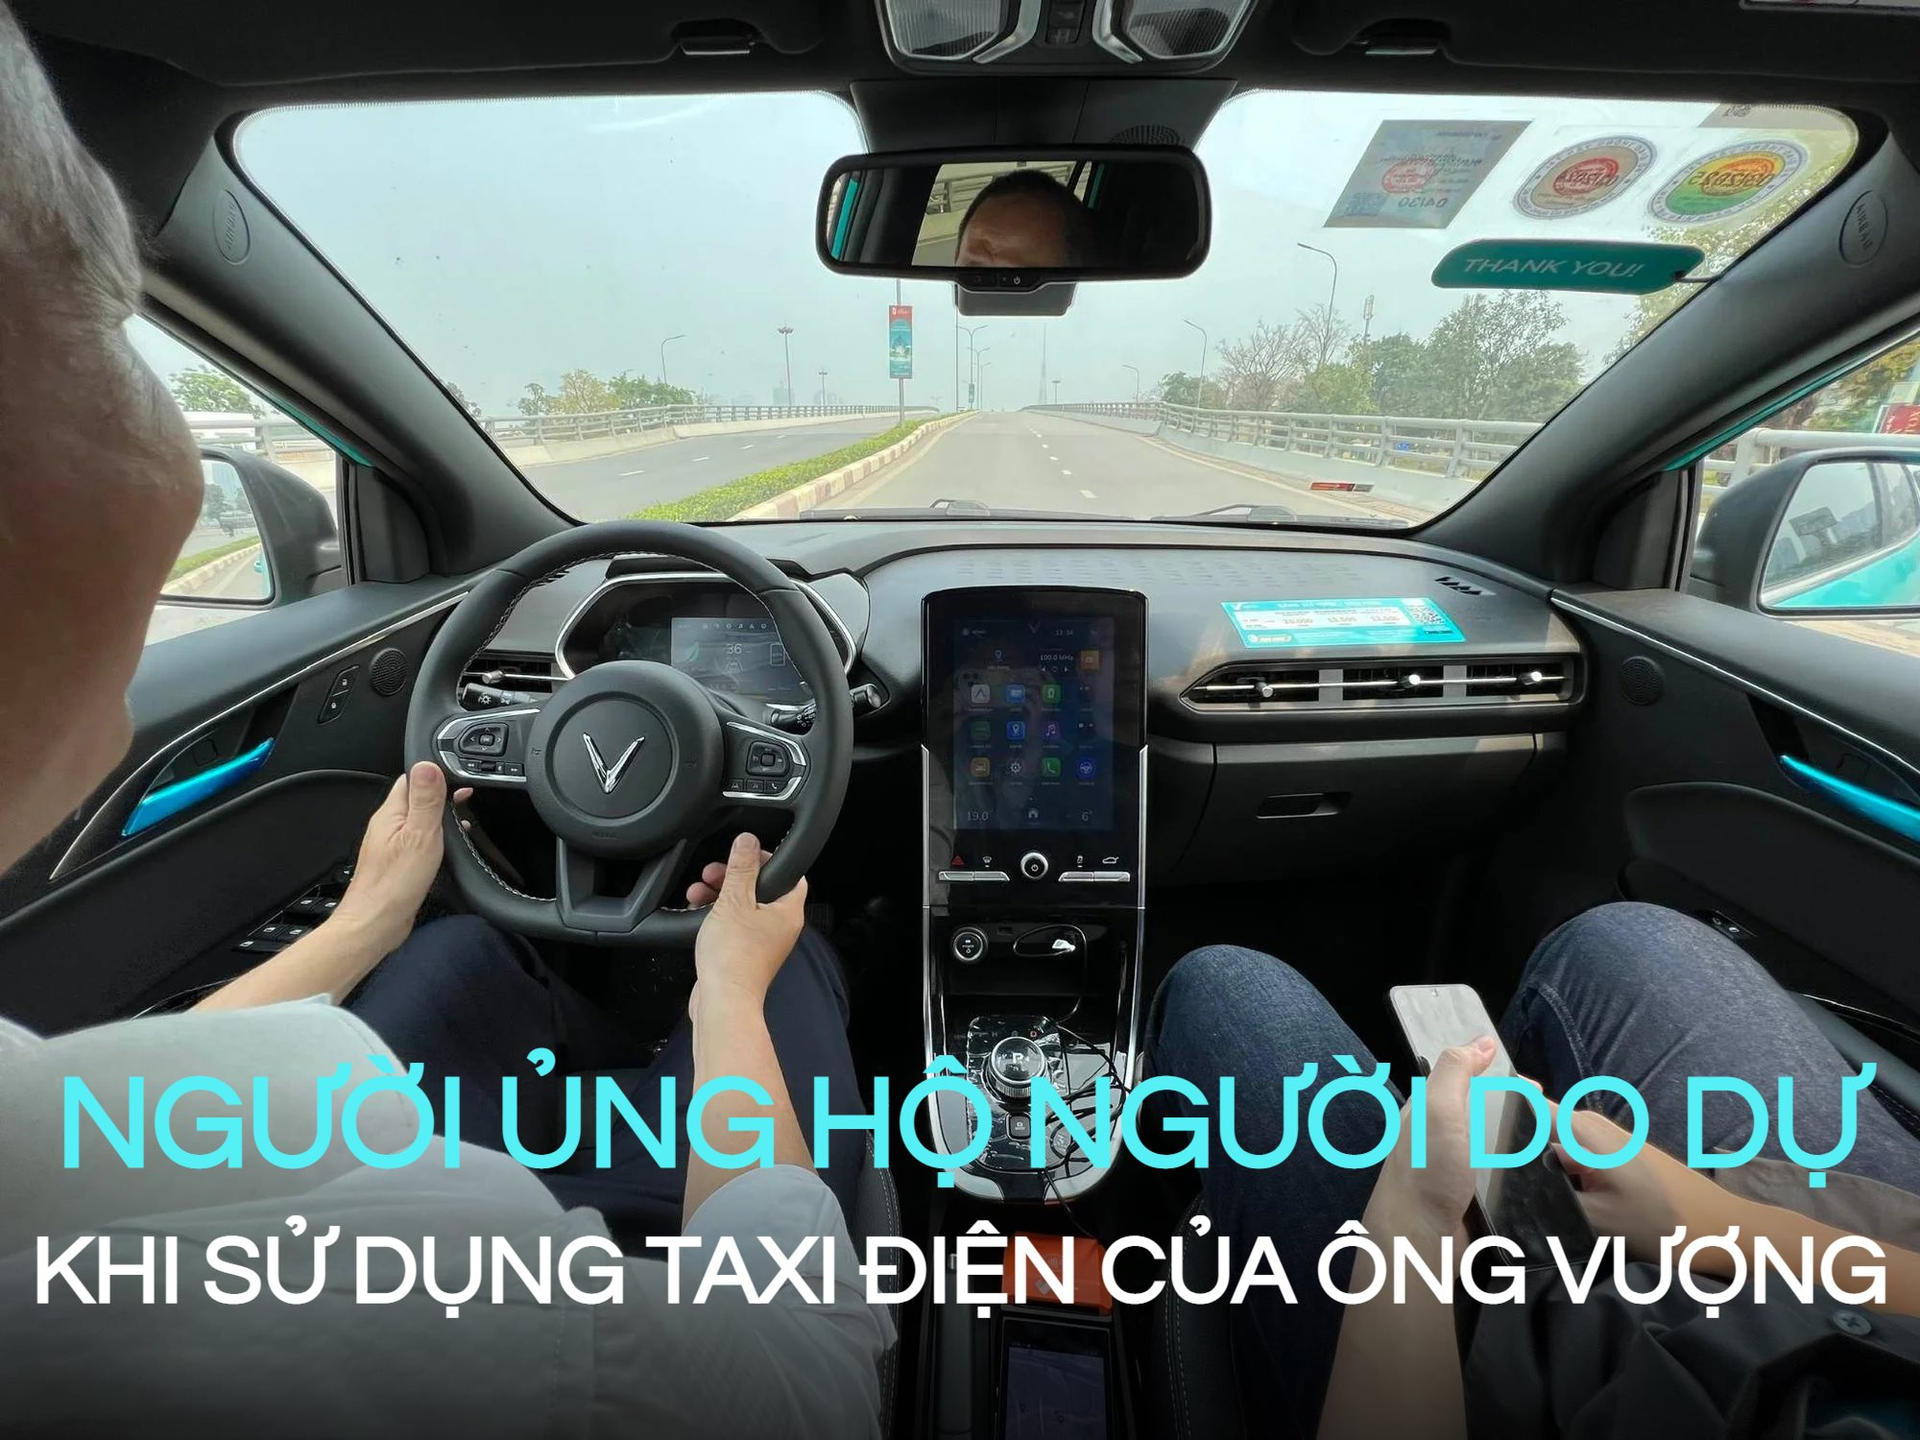 Taxi Xanh SM của ông Phạm Nhật Vượng vừa ra mắt chưa đầy 24h, phản ứng của người dùng: “Tiền nào của nấy” 